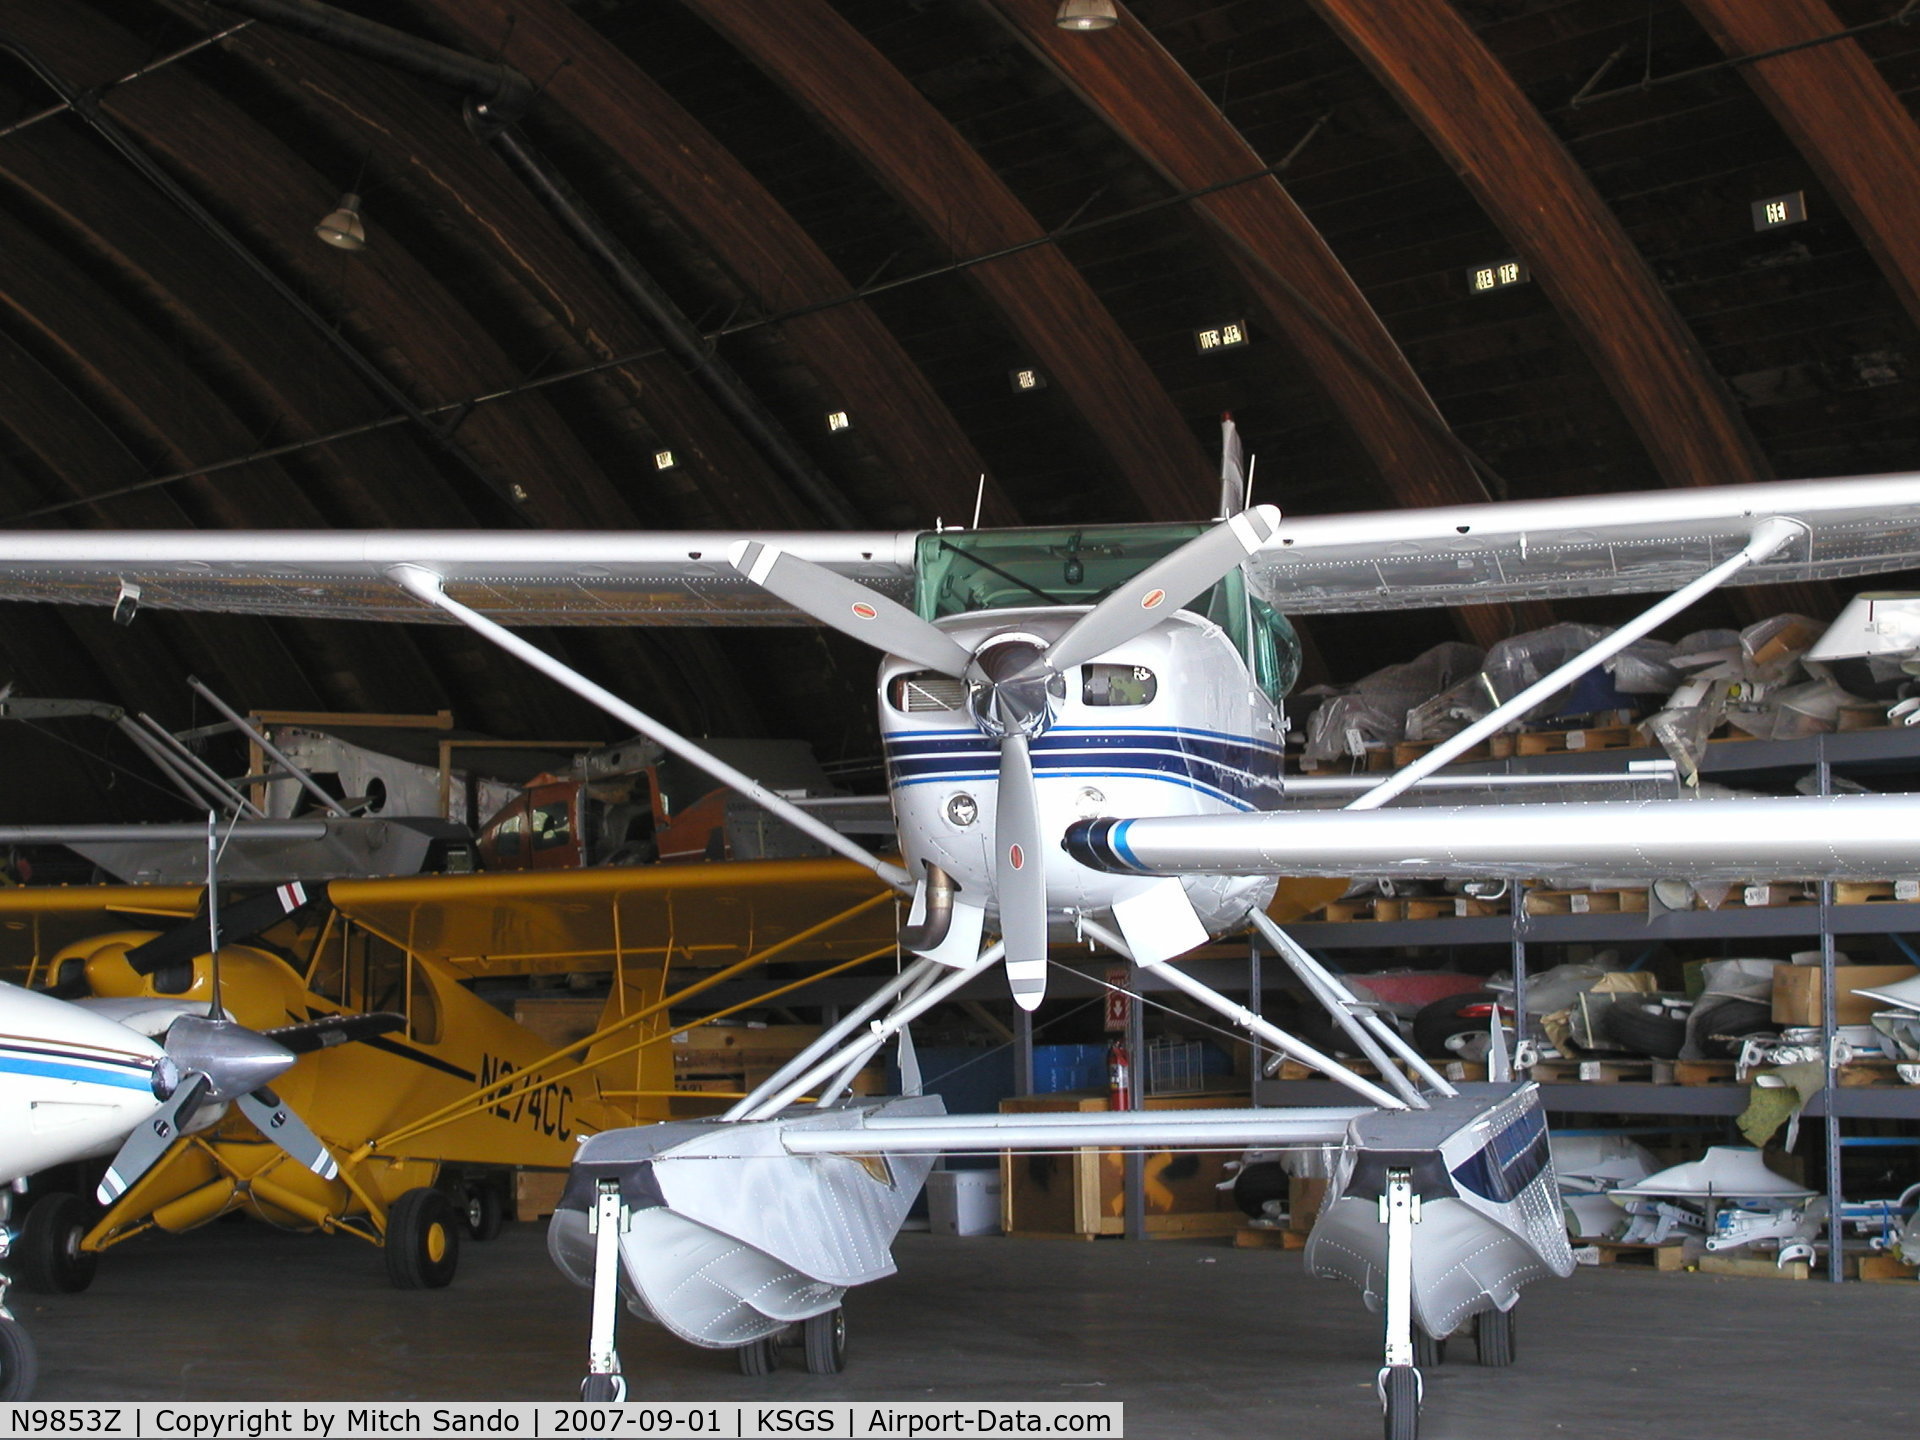 N9853Z, 1983 Cessna TU206G 6 II Turbo Stationair C/N U20606702, Parked inside Wipaire's Hangar.